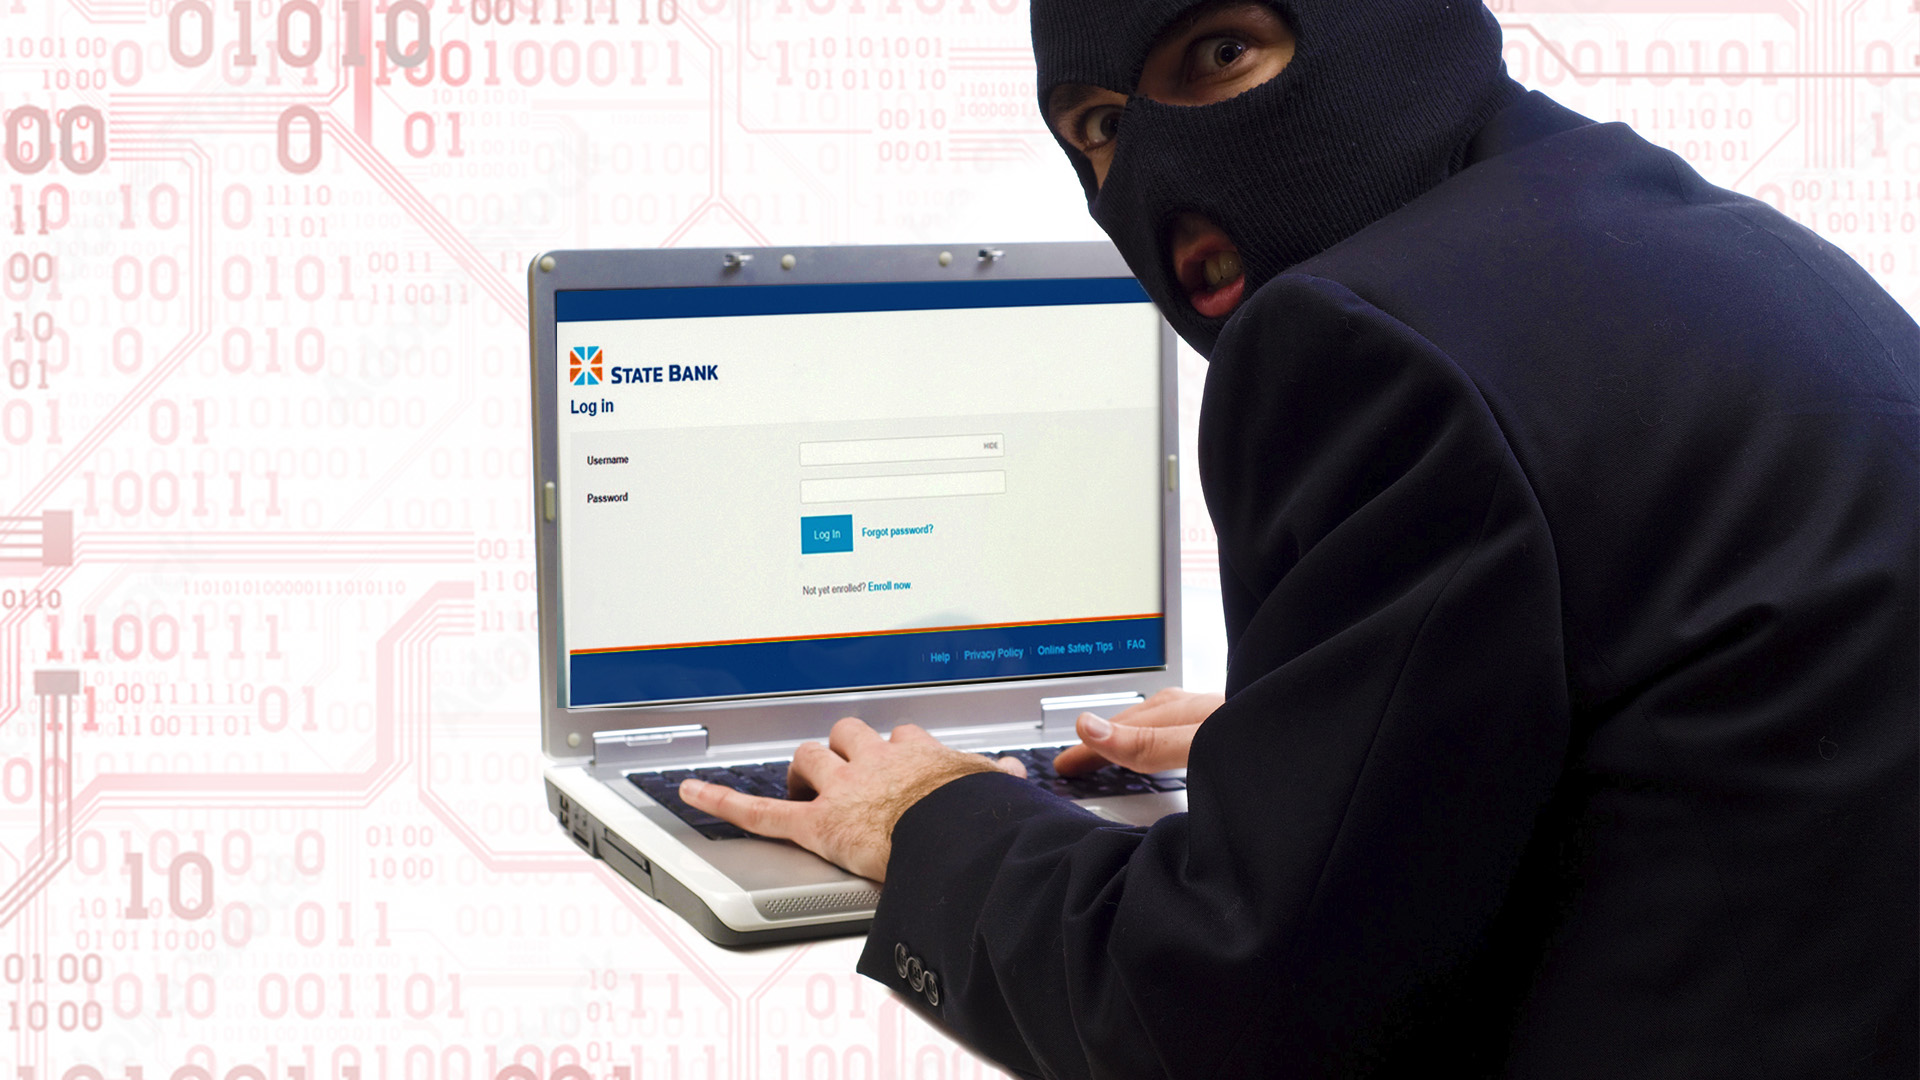 Cibercriminales utilizan perfiles falsos de bancos para robar dinero